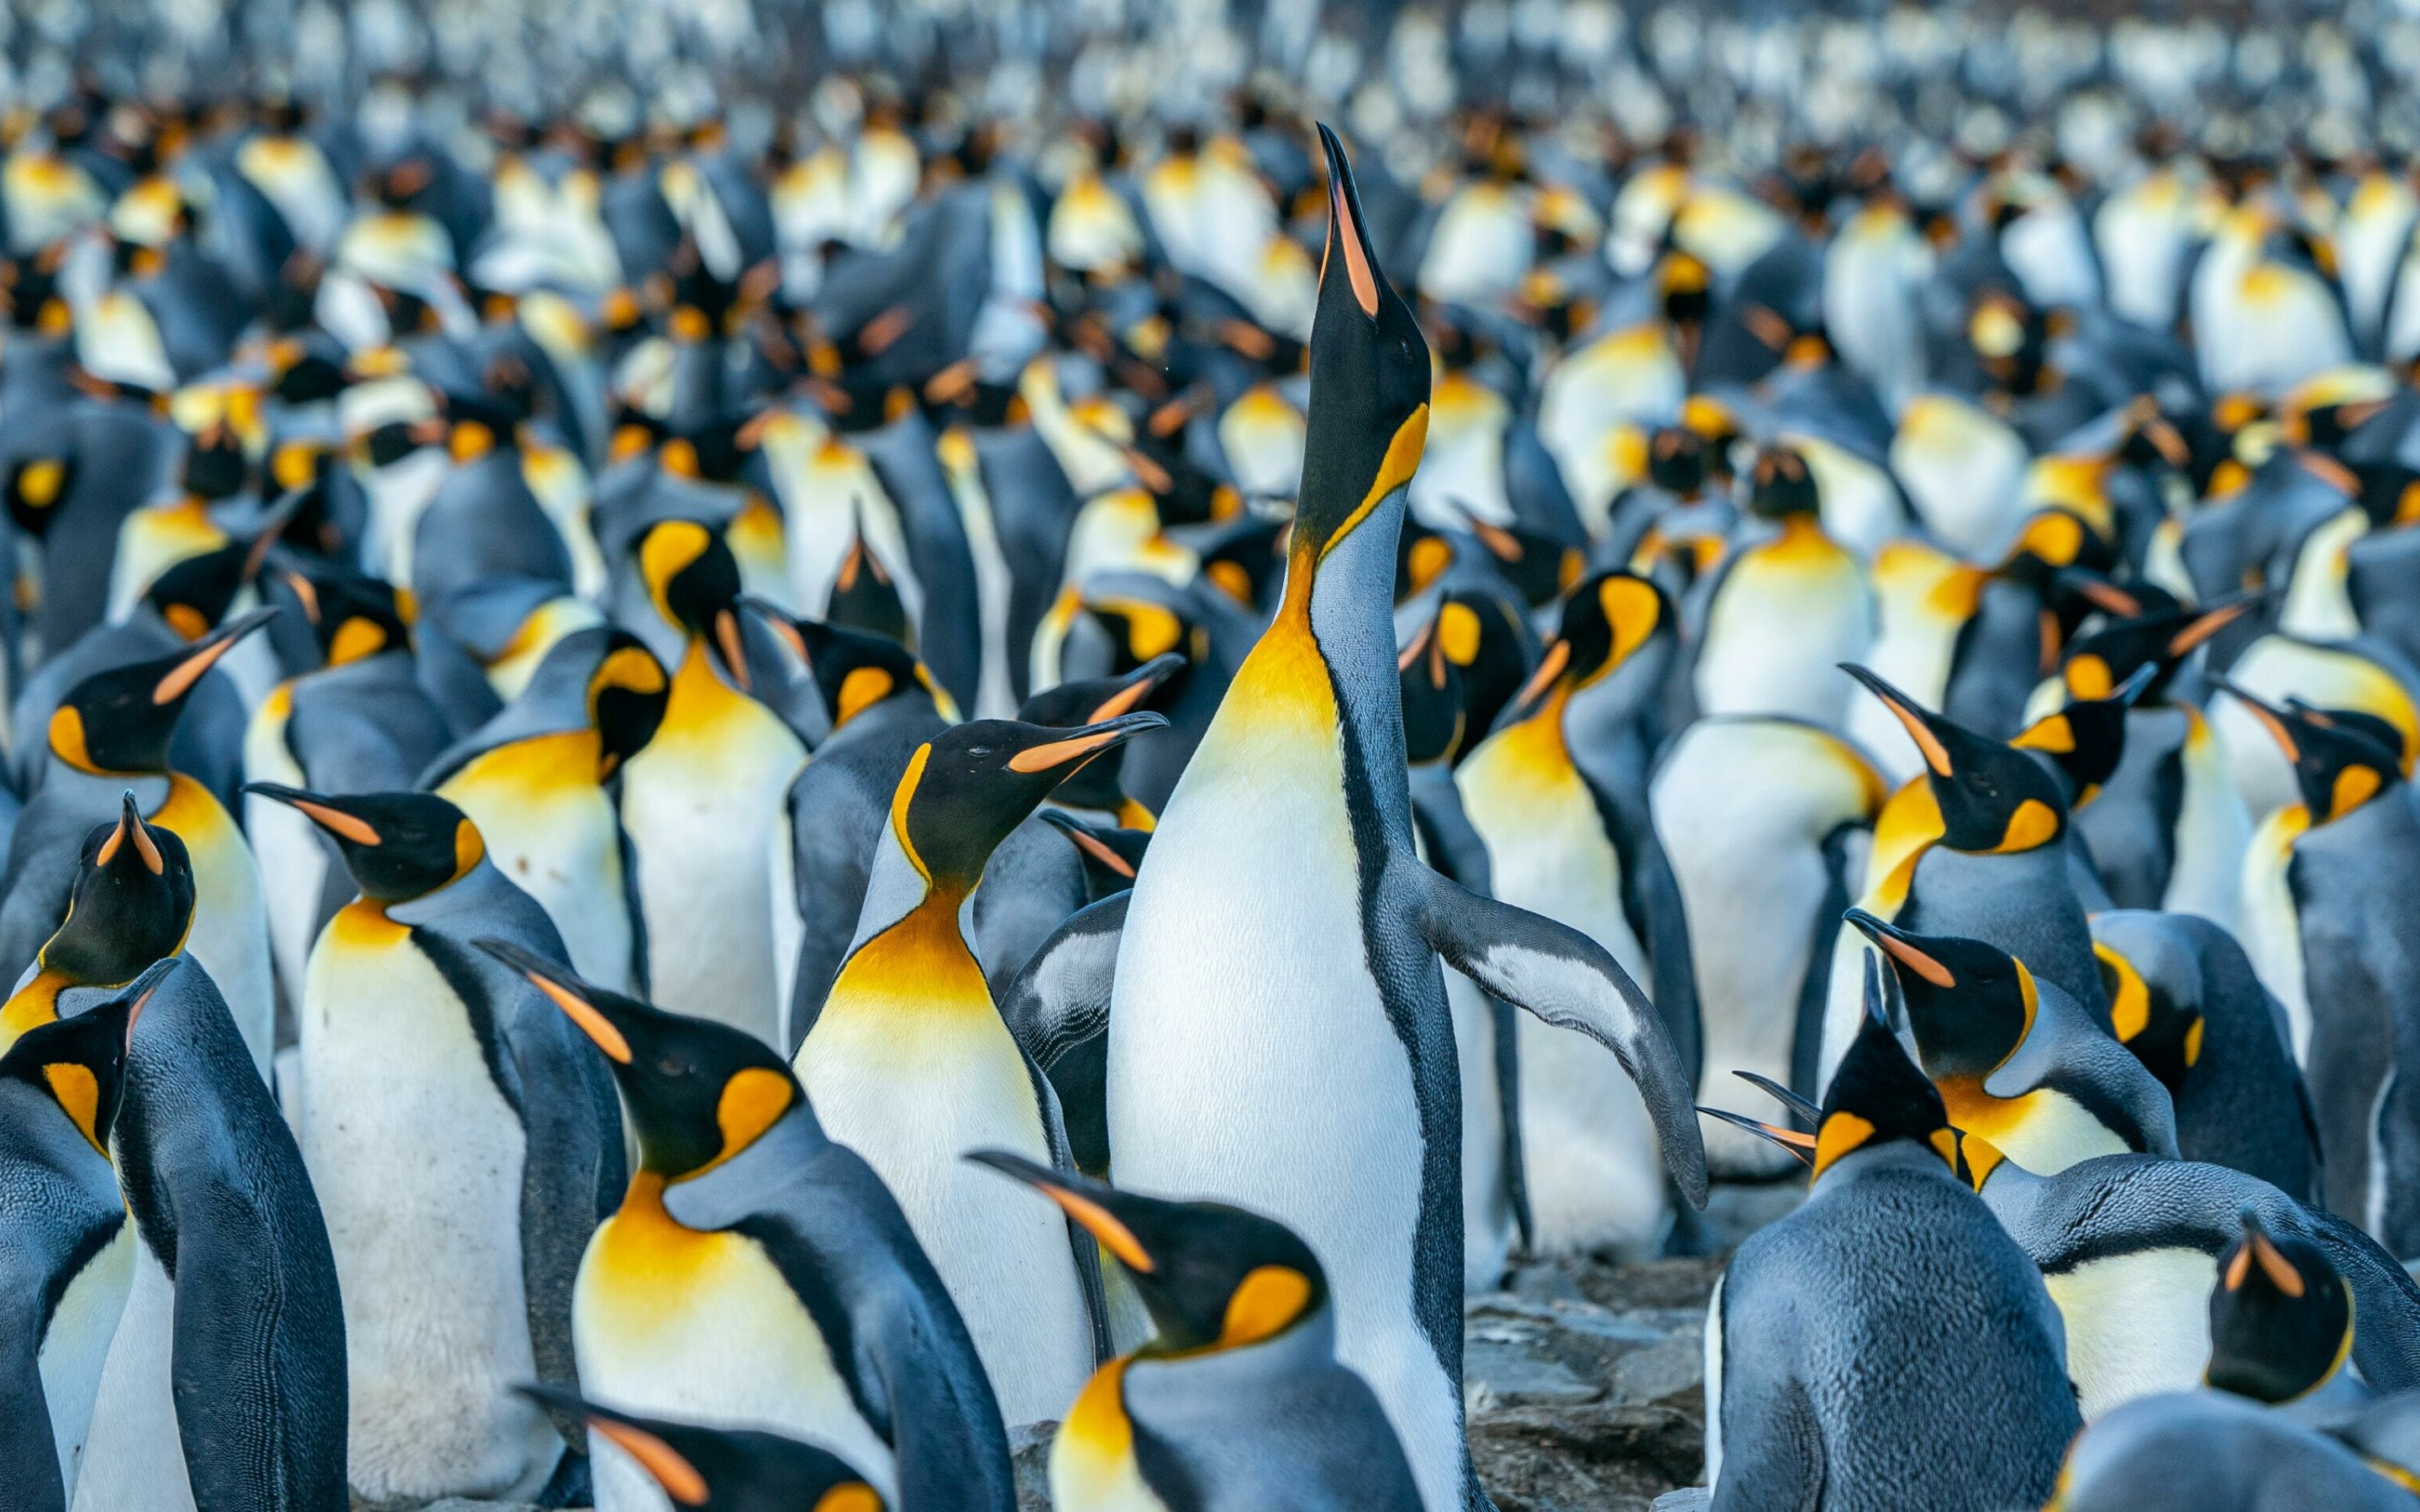 Penguin, flightless birds, herd, 2880x1800 wallpaper